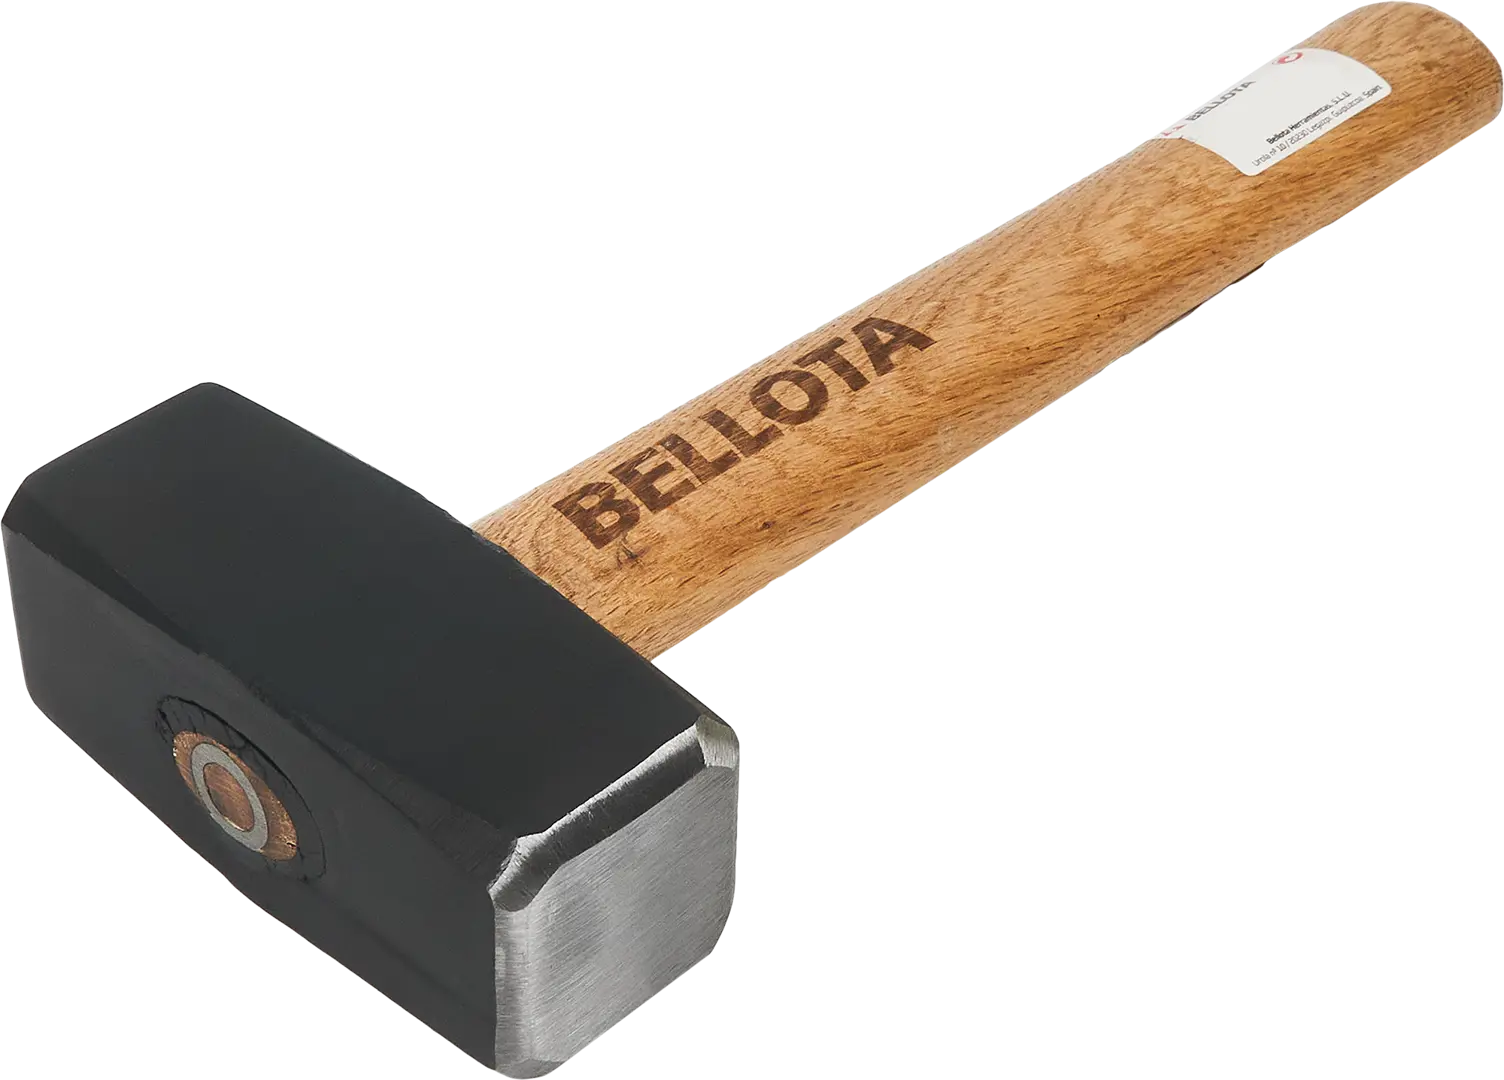 Кувалда Bellota 25310-E деревянная рукоятка 2000 г кувалда специально для разрушительных работ bellota